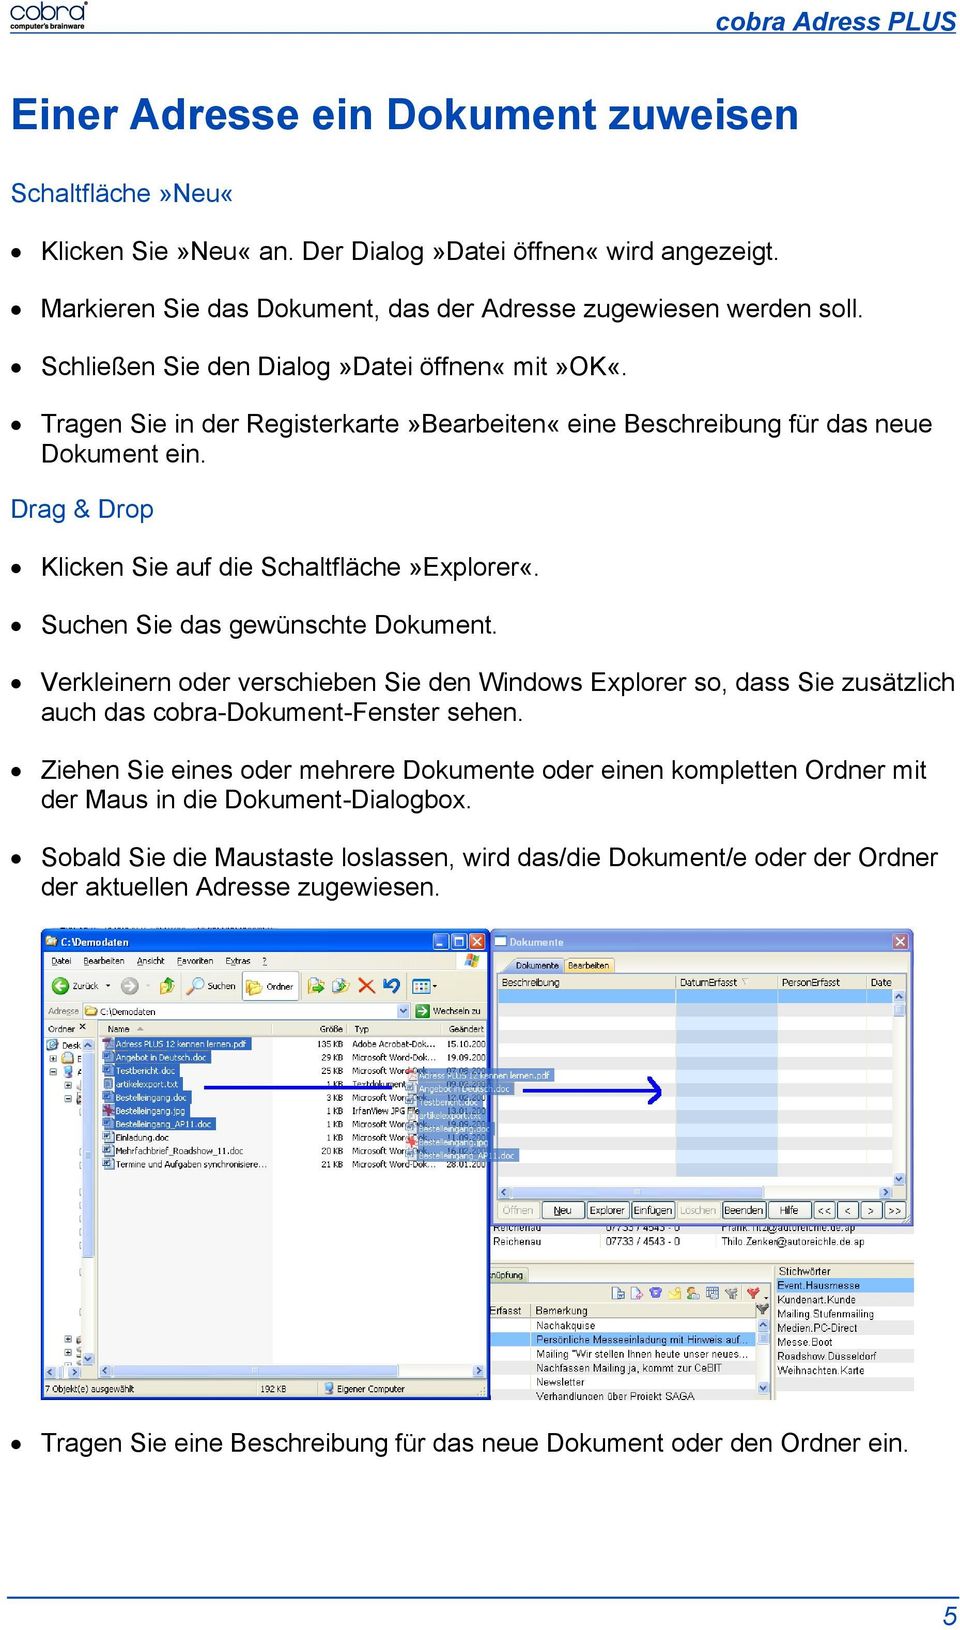 Suchen Sie das gewünschte Dokument. Verkleinern oder verschieben Sie den Windows Explorer so, dass Sie zusätzlich auch das cobra-dokument-fenster sehen.